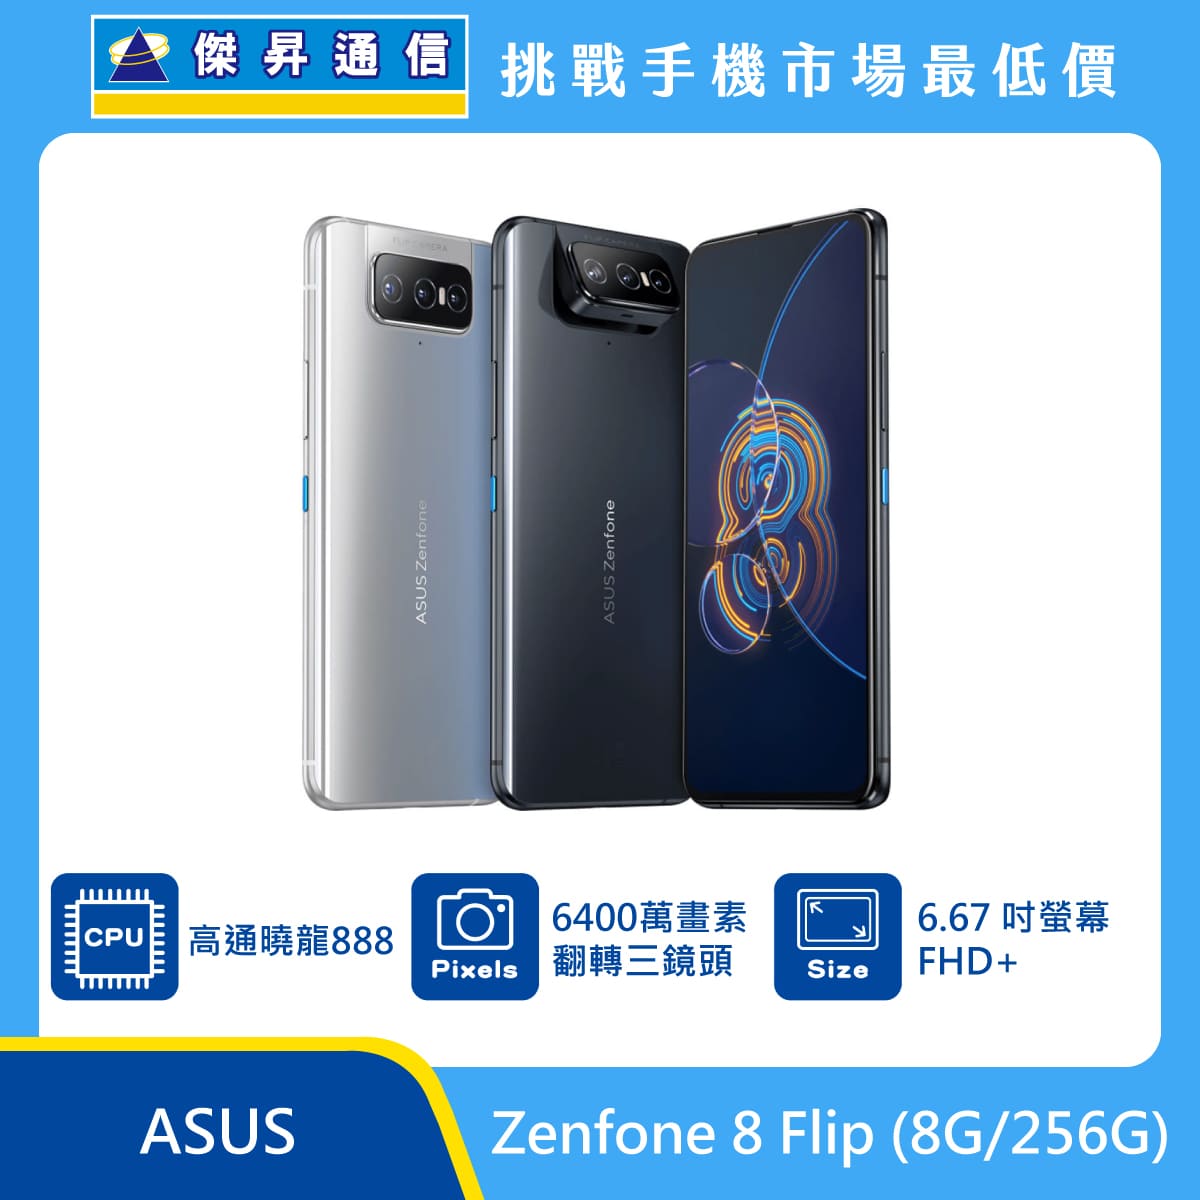 ASUS Zenfone 8 Flip (8G/256G)